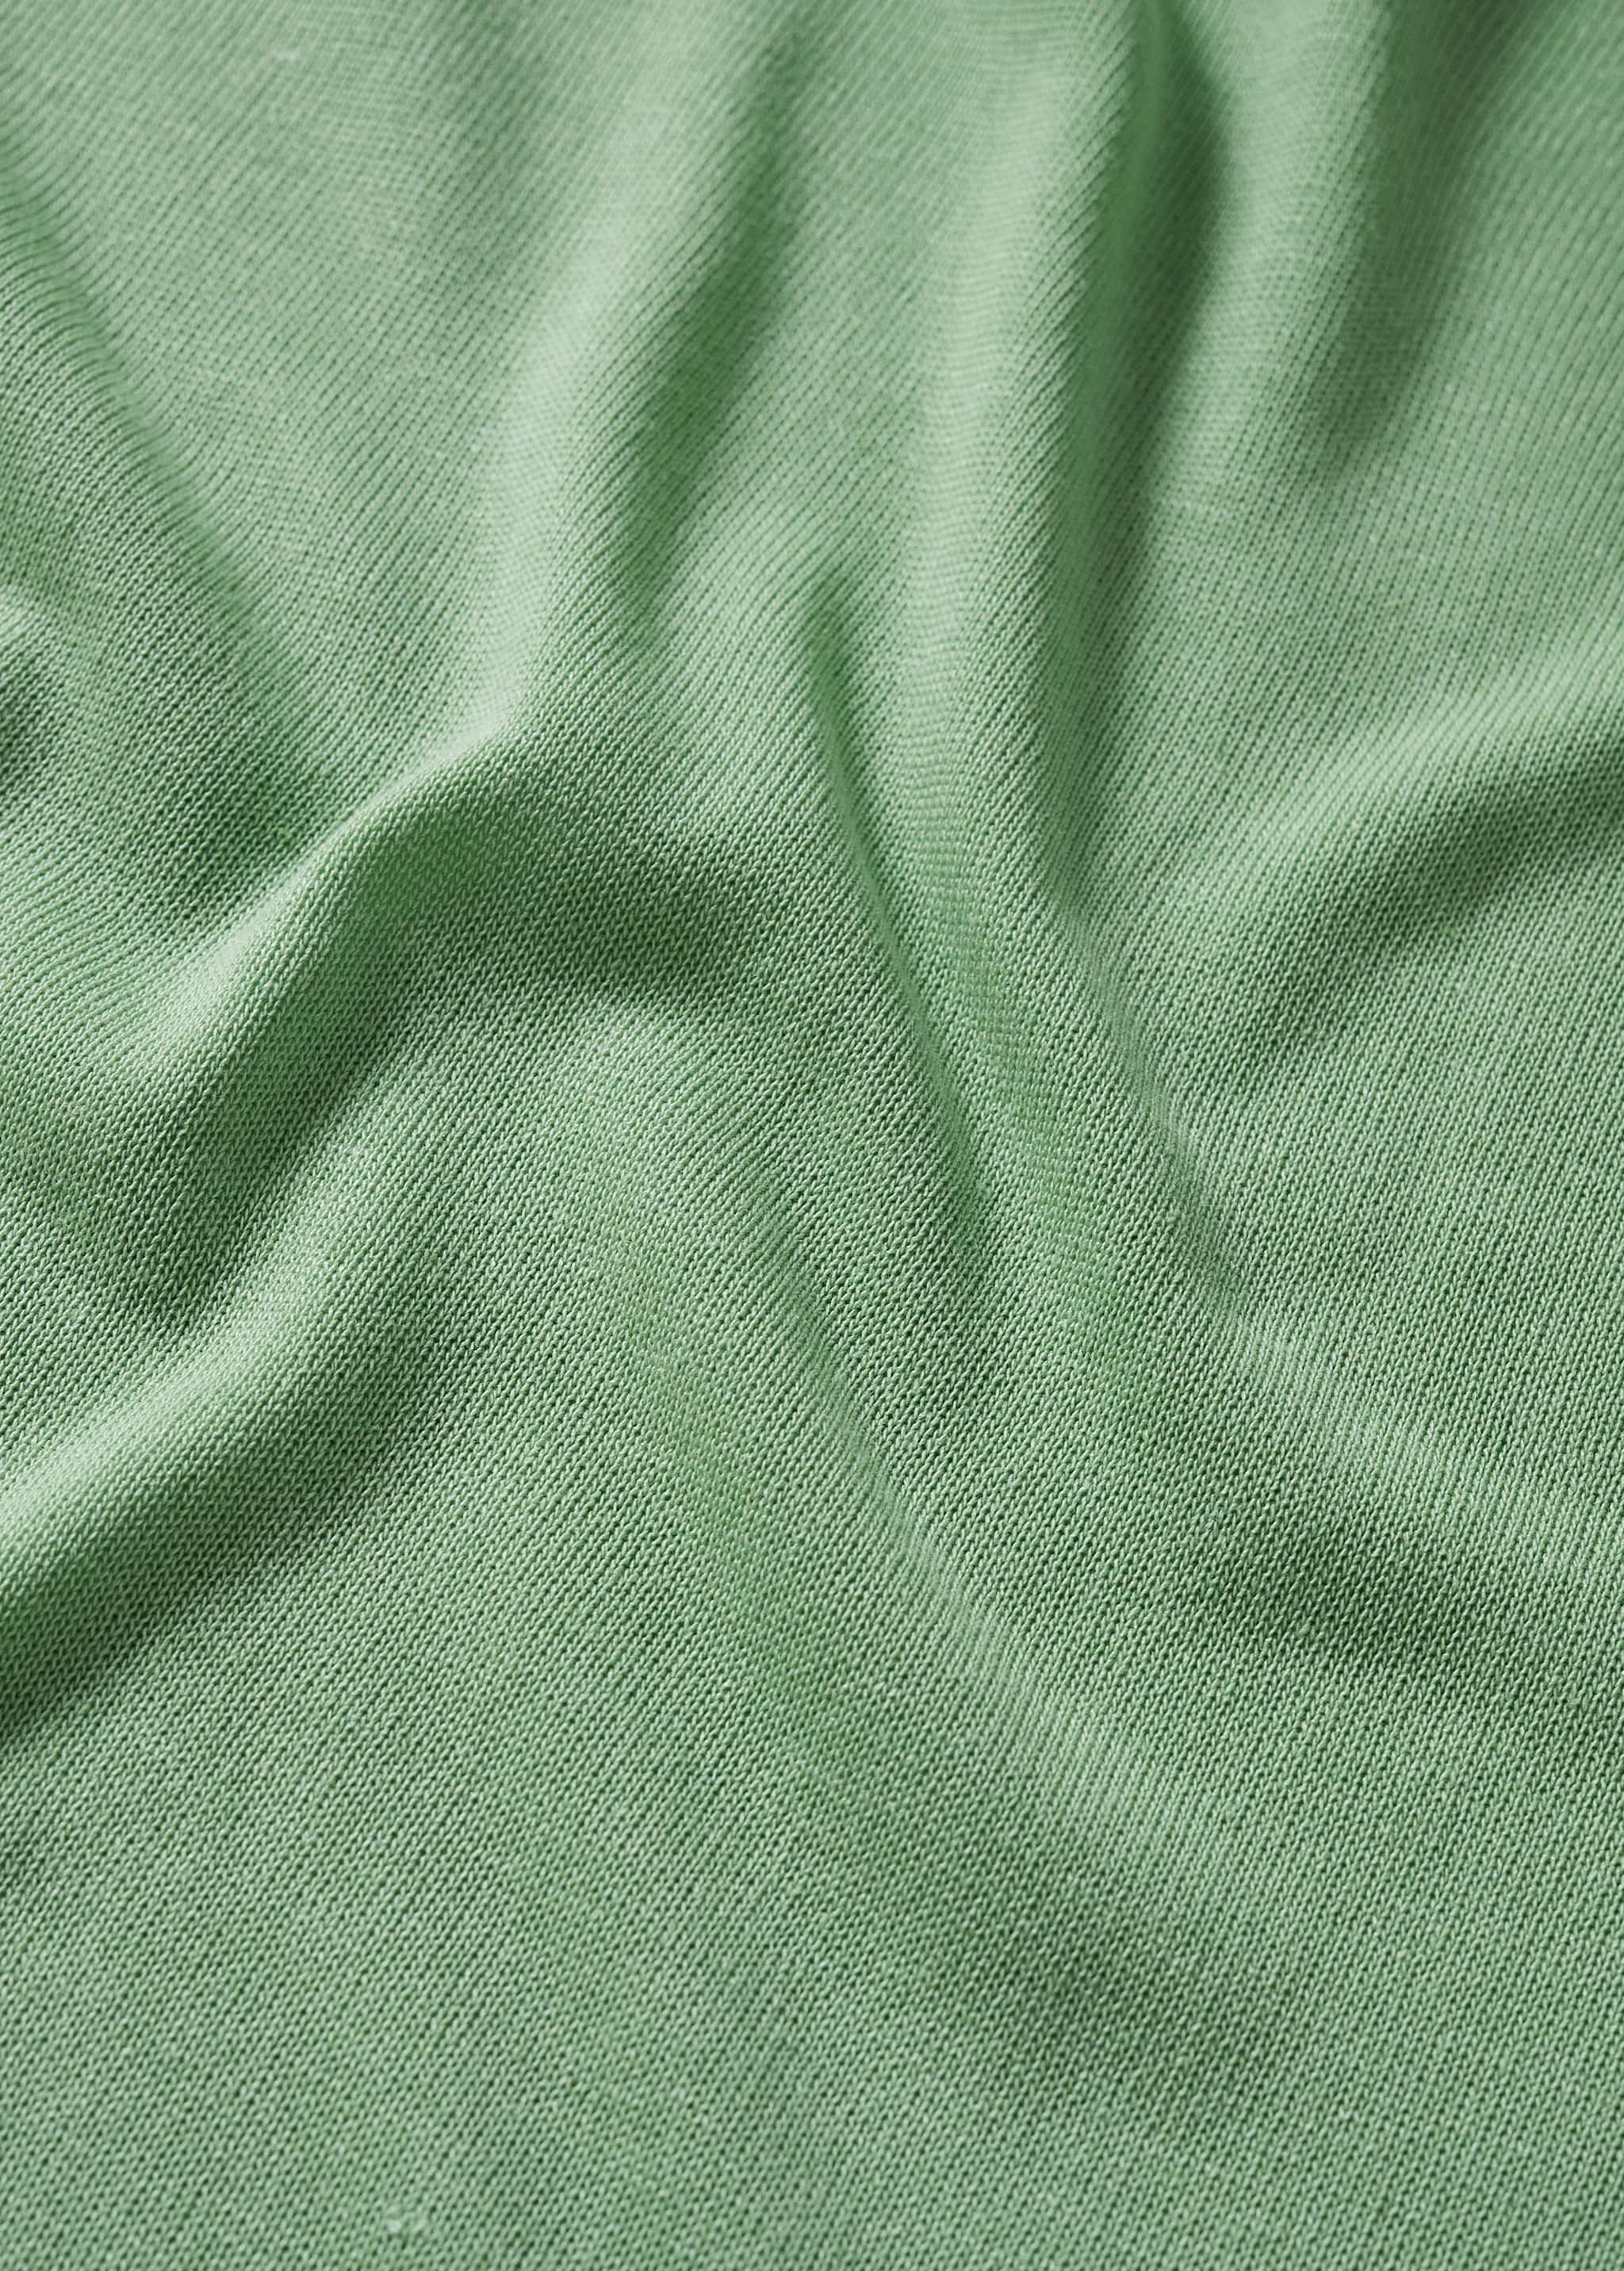 Camiseta punto lino - Detalle del artículo 8